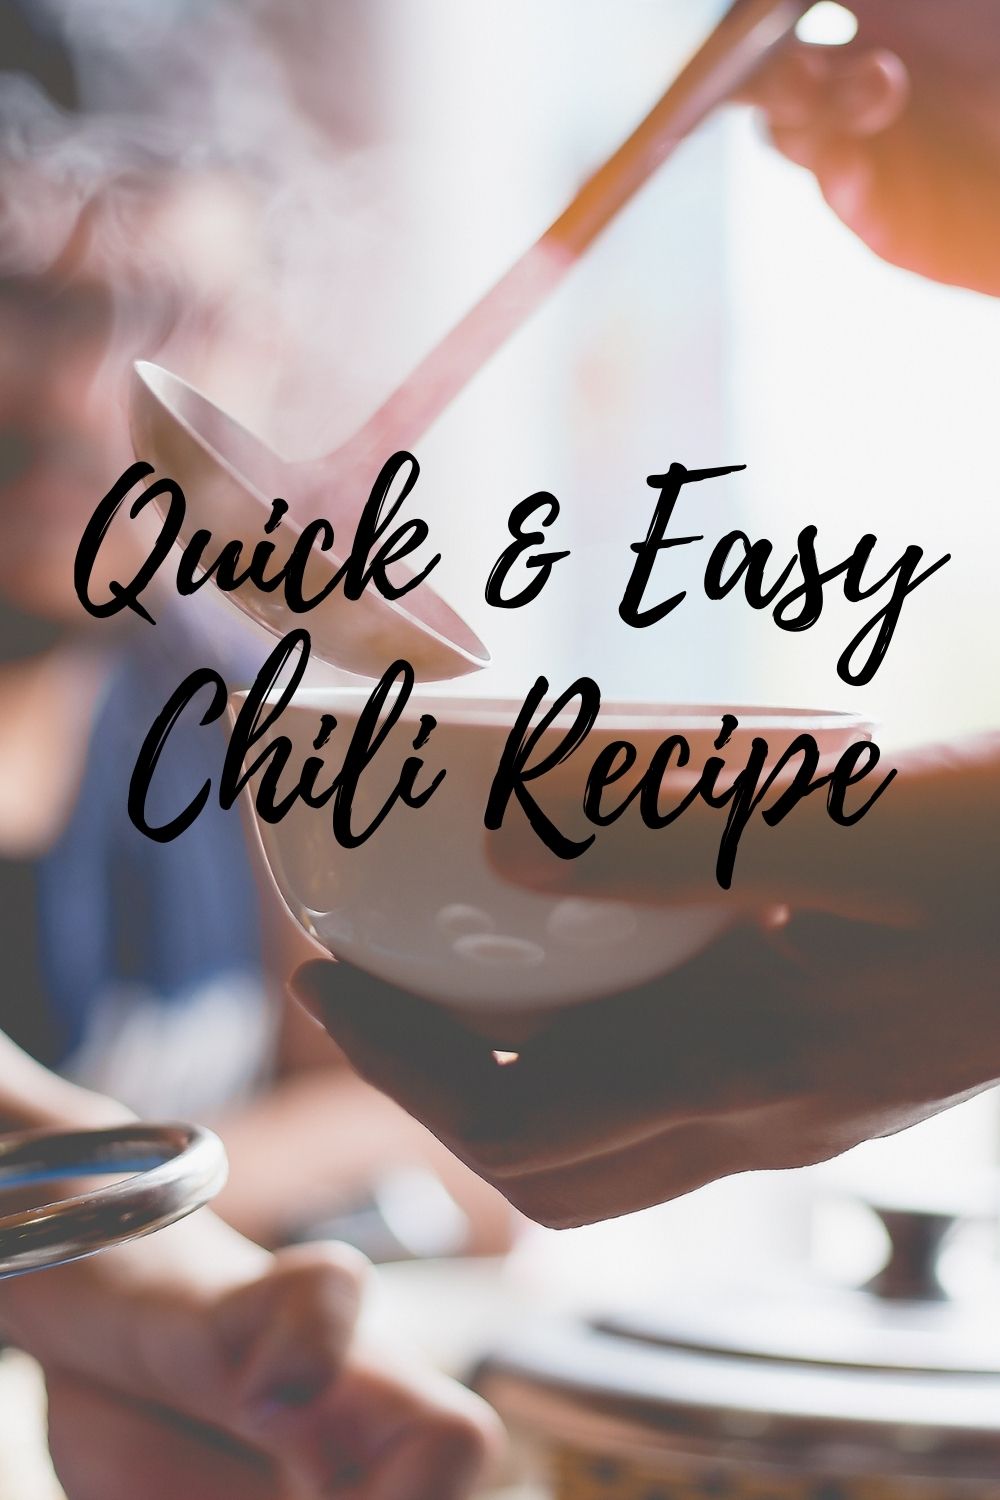 Quick & Easy Chili Recipe